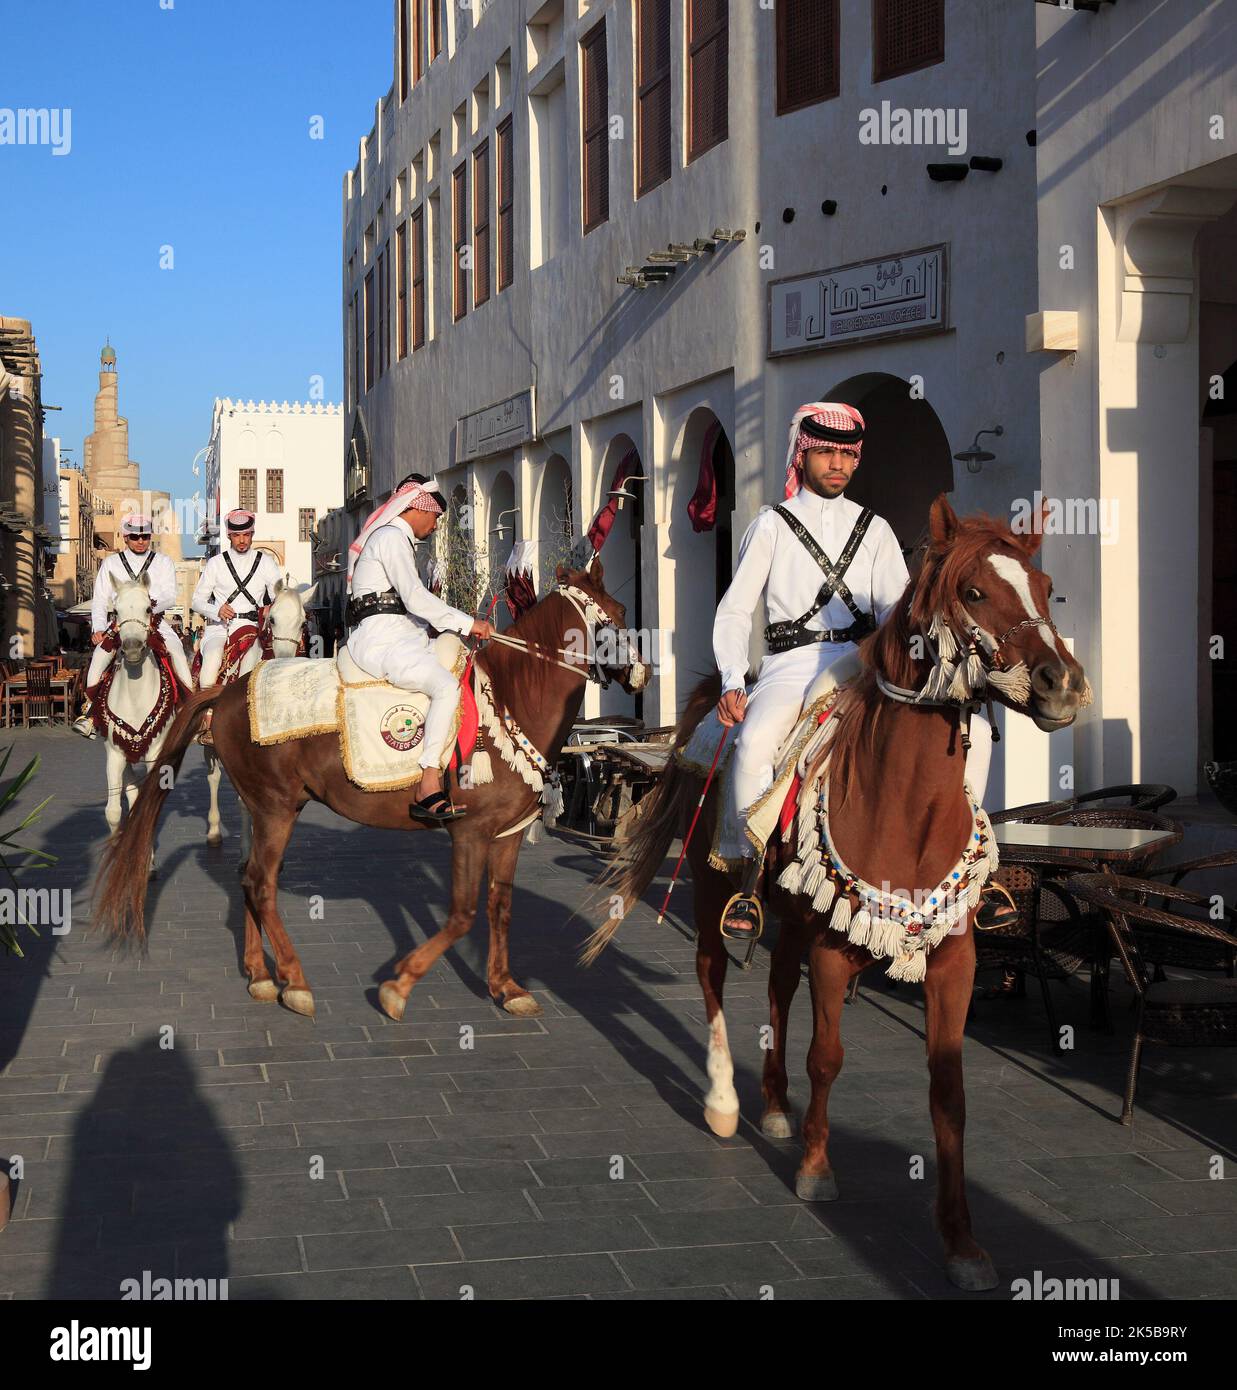 Altstadt von Doha, Reiter auf Araberpferden, Qatar, Katar Foto Stock